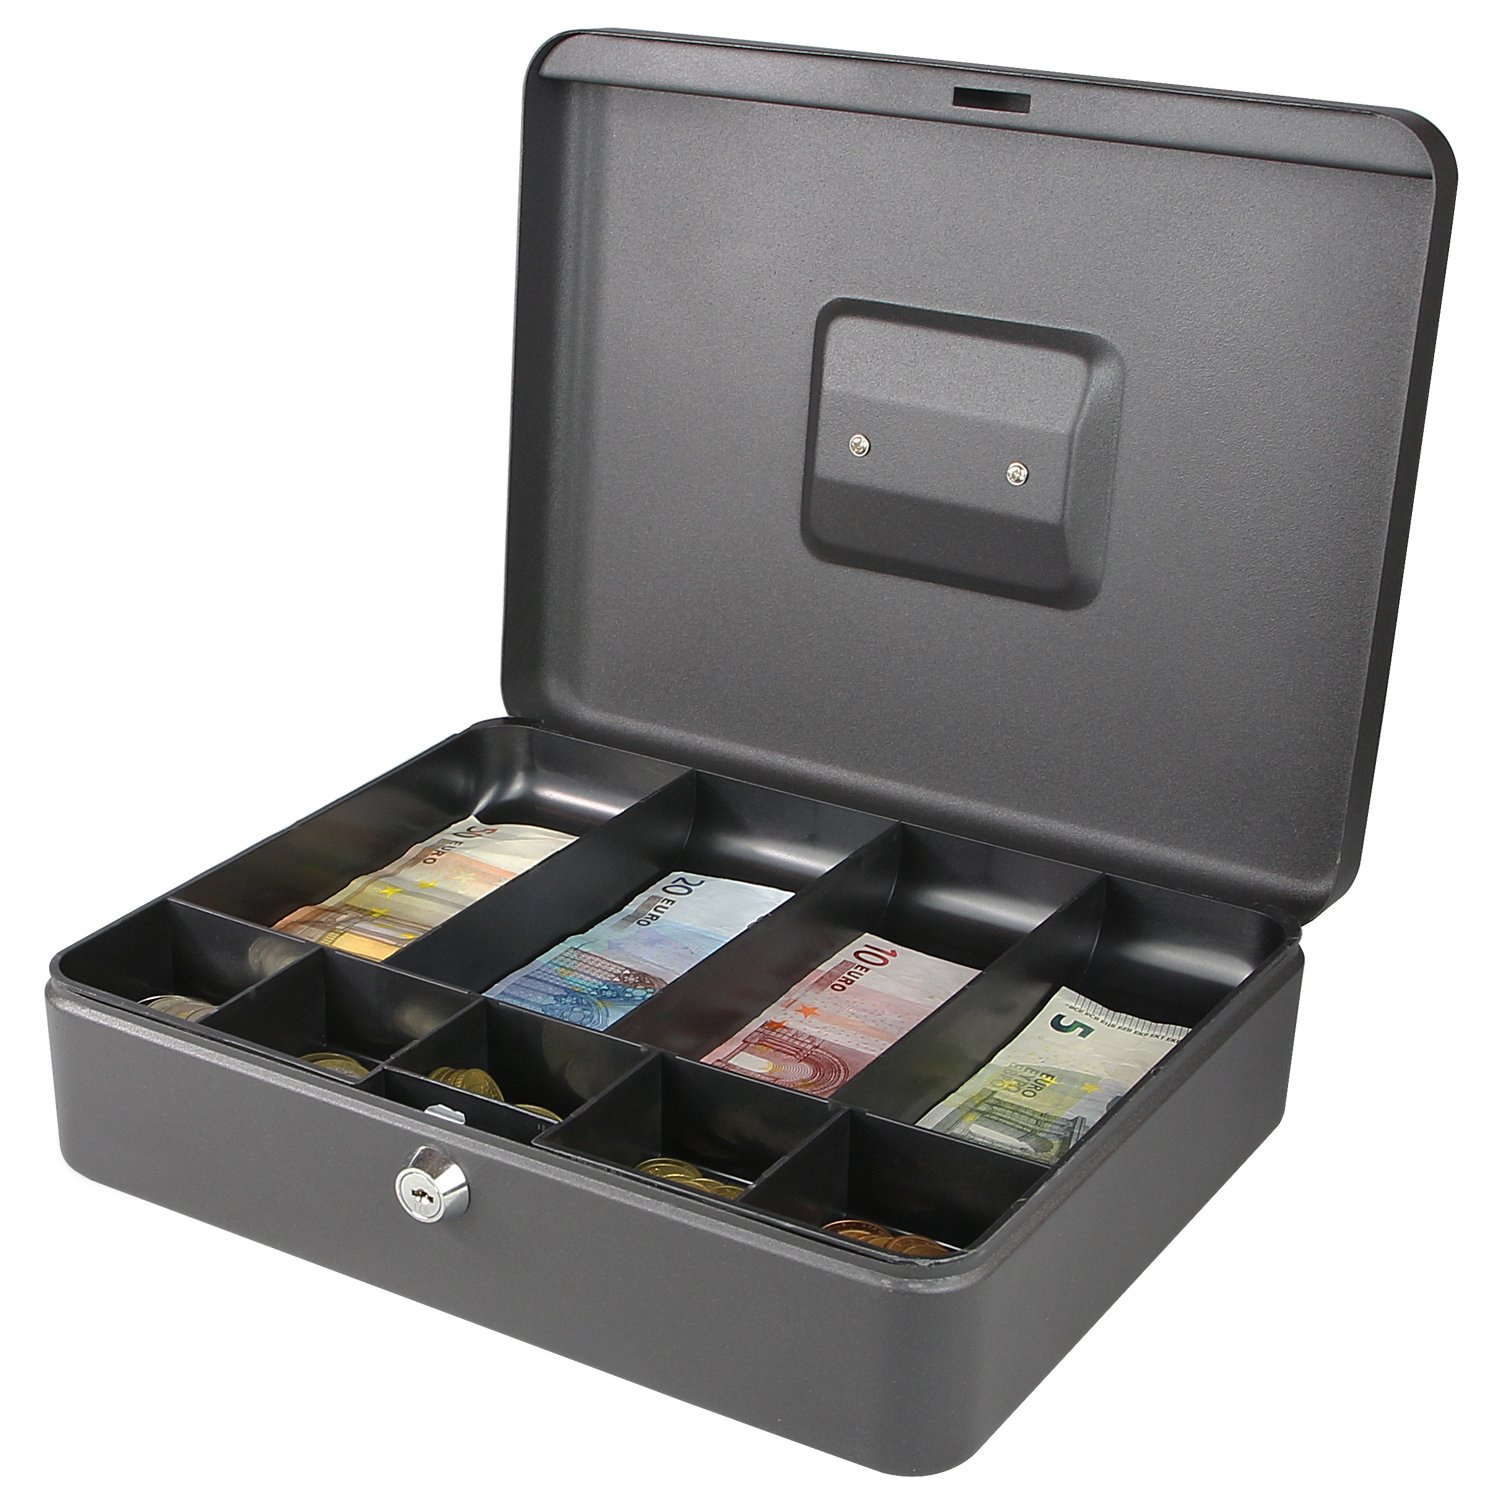 Geldkassette – Der Platz für Ihre privaten Schätze!